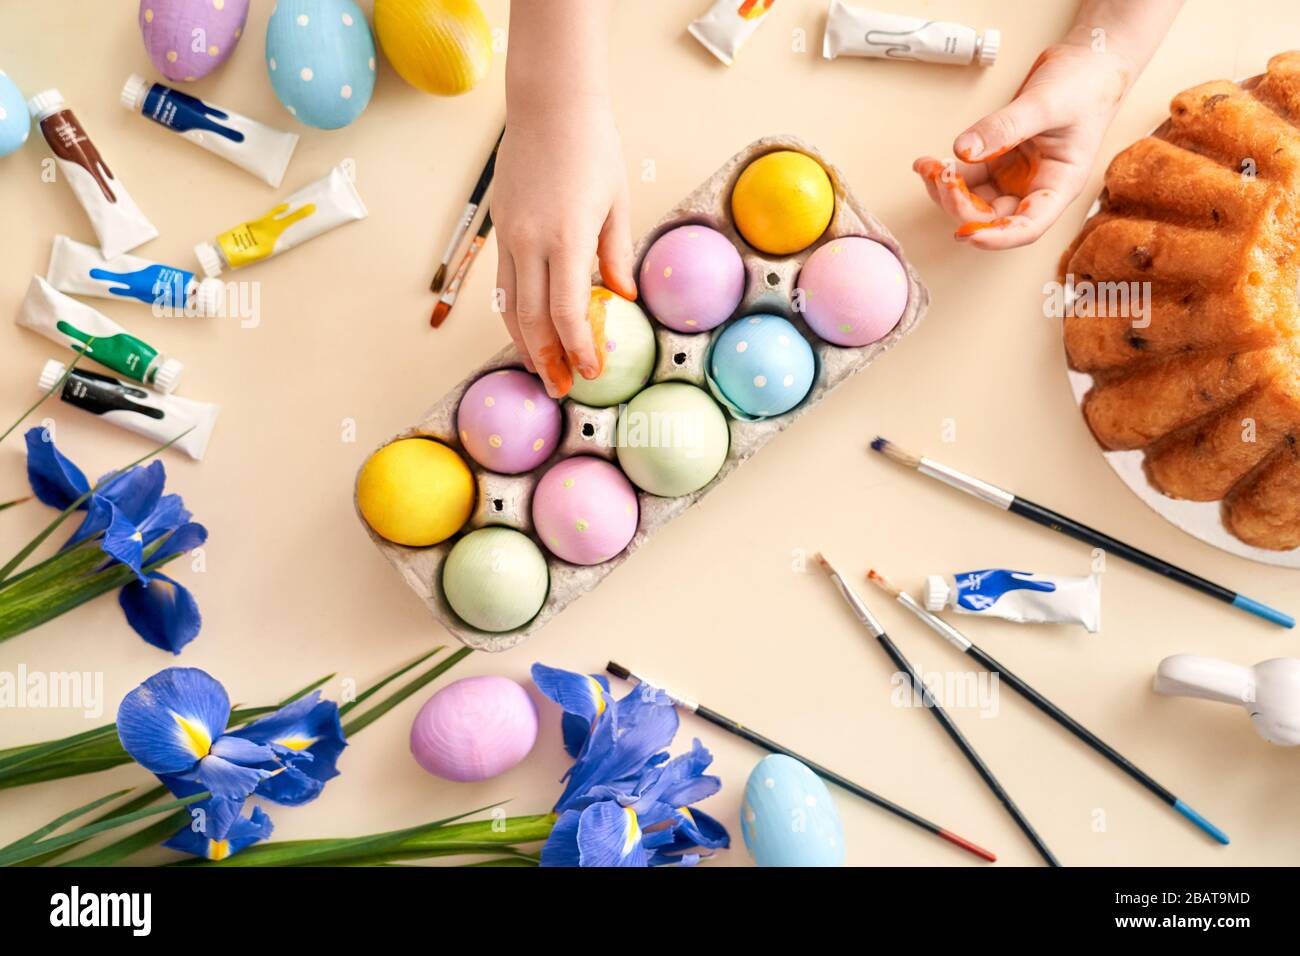 Petite fille de Pâques touchant des objets de Pâques sur la table Banque D'Images